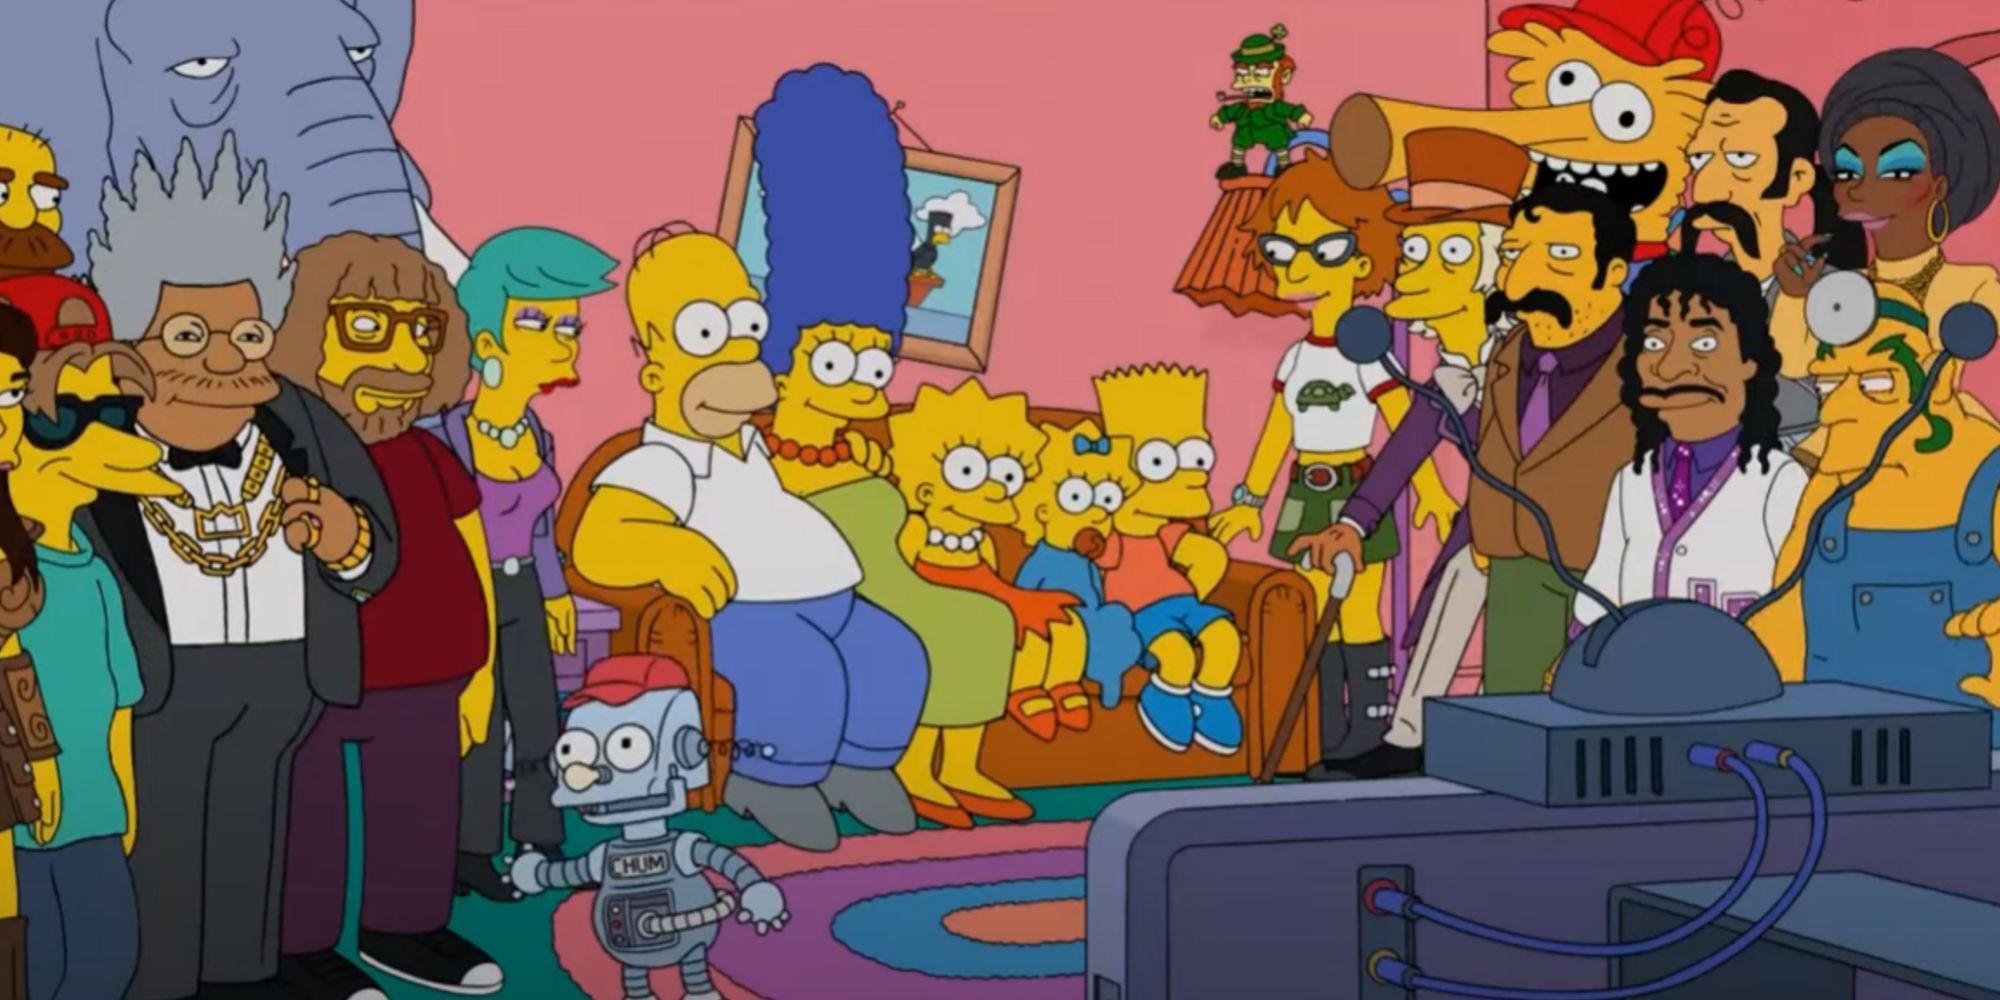 Los Simpson presentaron 750 personajes únicos en la secuencia de apertura del episodio Milestone